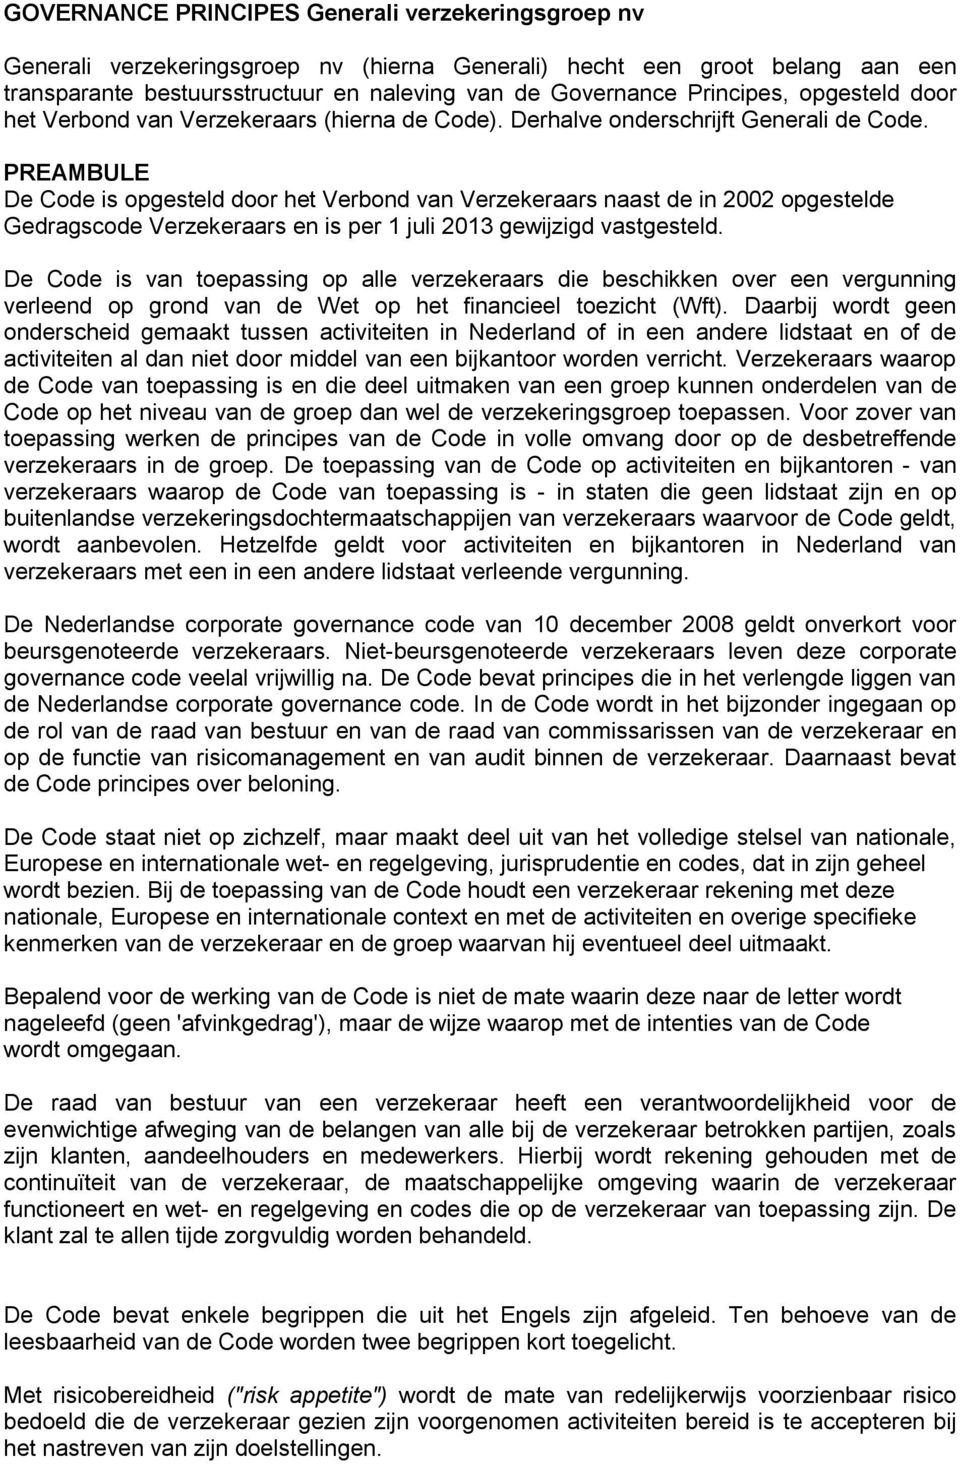 PREAMBULE De Code is opgesteld door het Verbond van Verzekeraars naast de in 2002 opgestelde Gedragscode Verzekeraars en is per 1 juli 2013 gewijzigd vastgesteld.